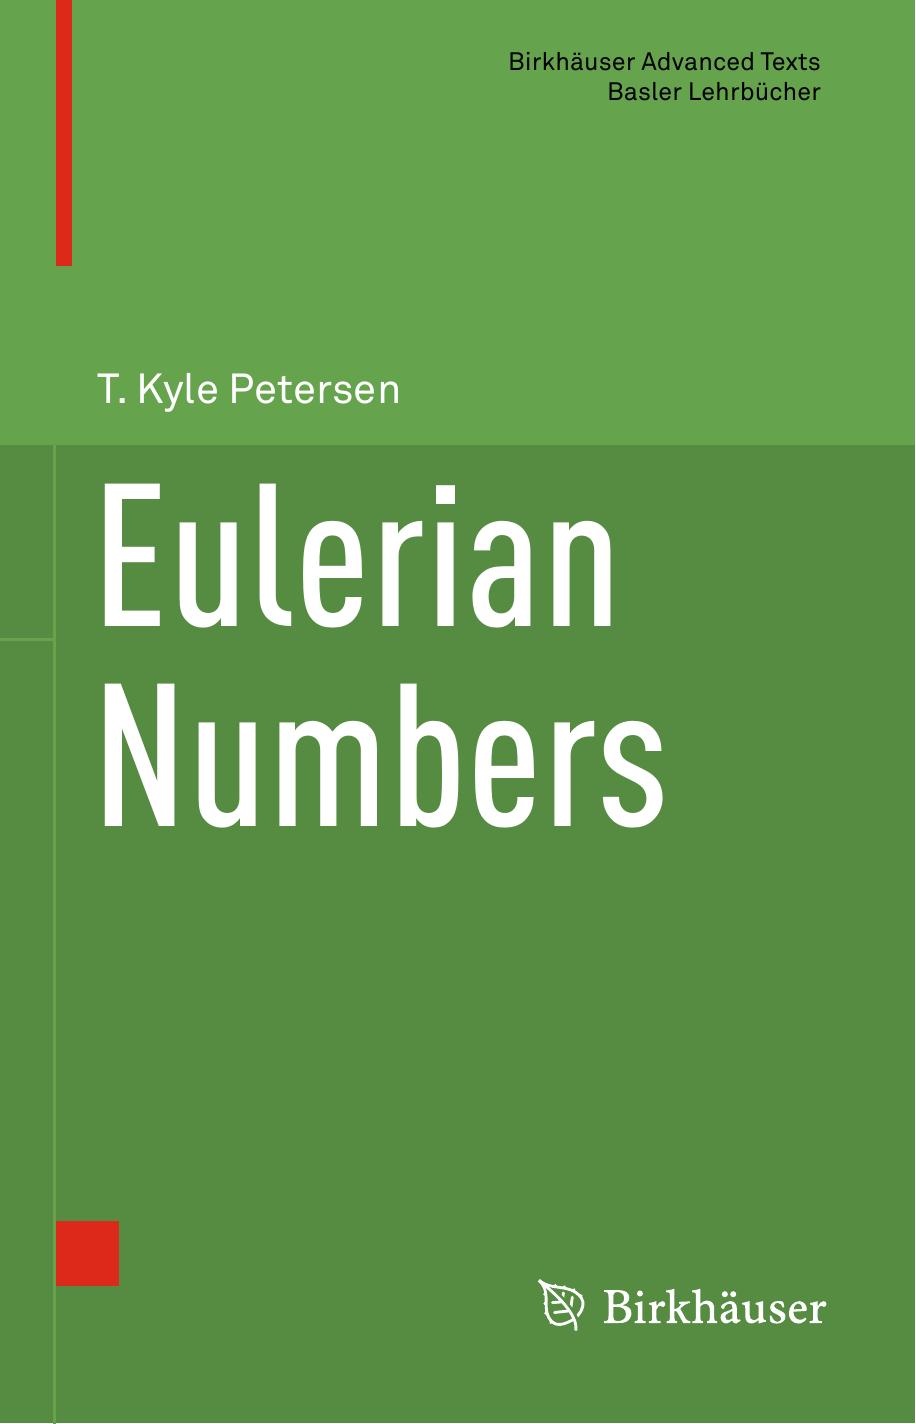 Eulerian Numbers by T. Kyle Petersen